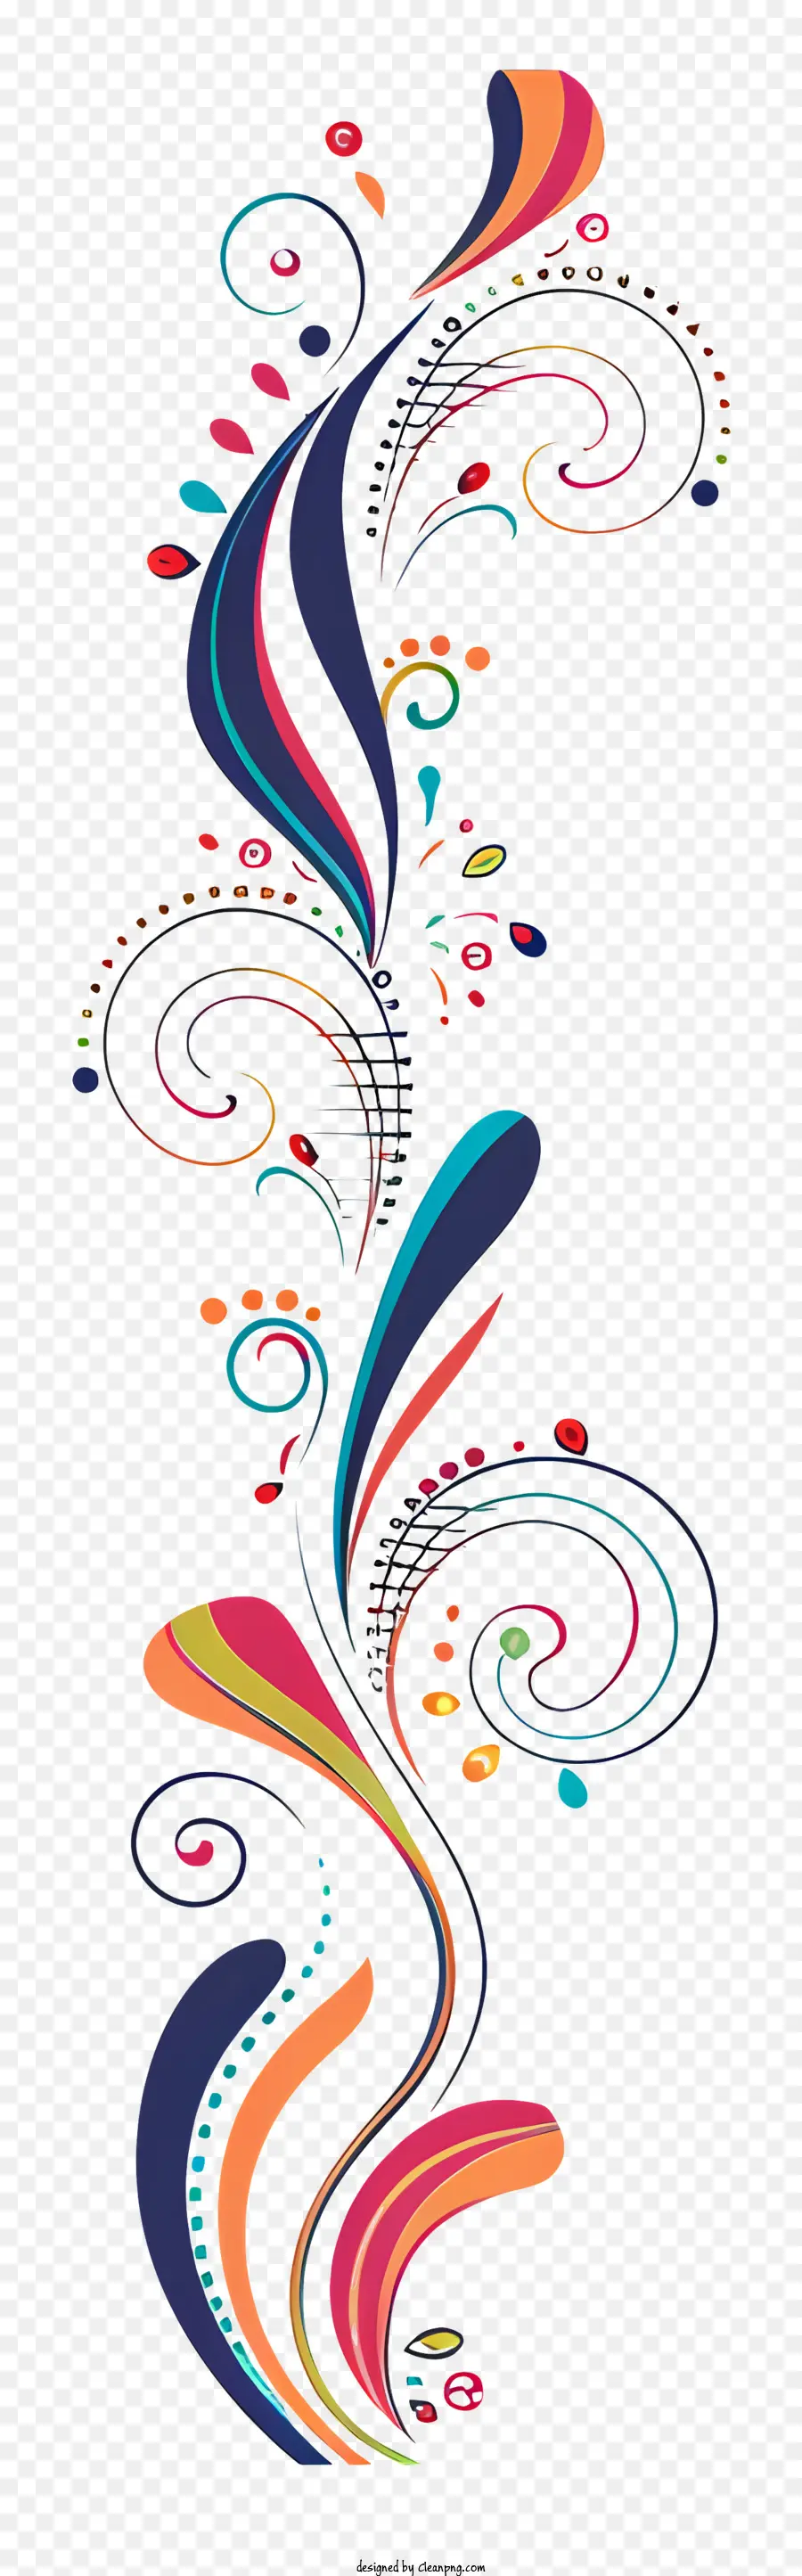 Dòng trang trí lạ mắt nghệ thuật trừu tượng nghệ thuật swirls đầy màu sắc thiết kế hình tròn mẫu xoắn - Thiết kế xoáy đầy màu sắc với năng lượng và chuyển động